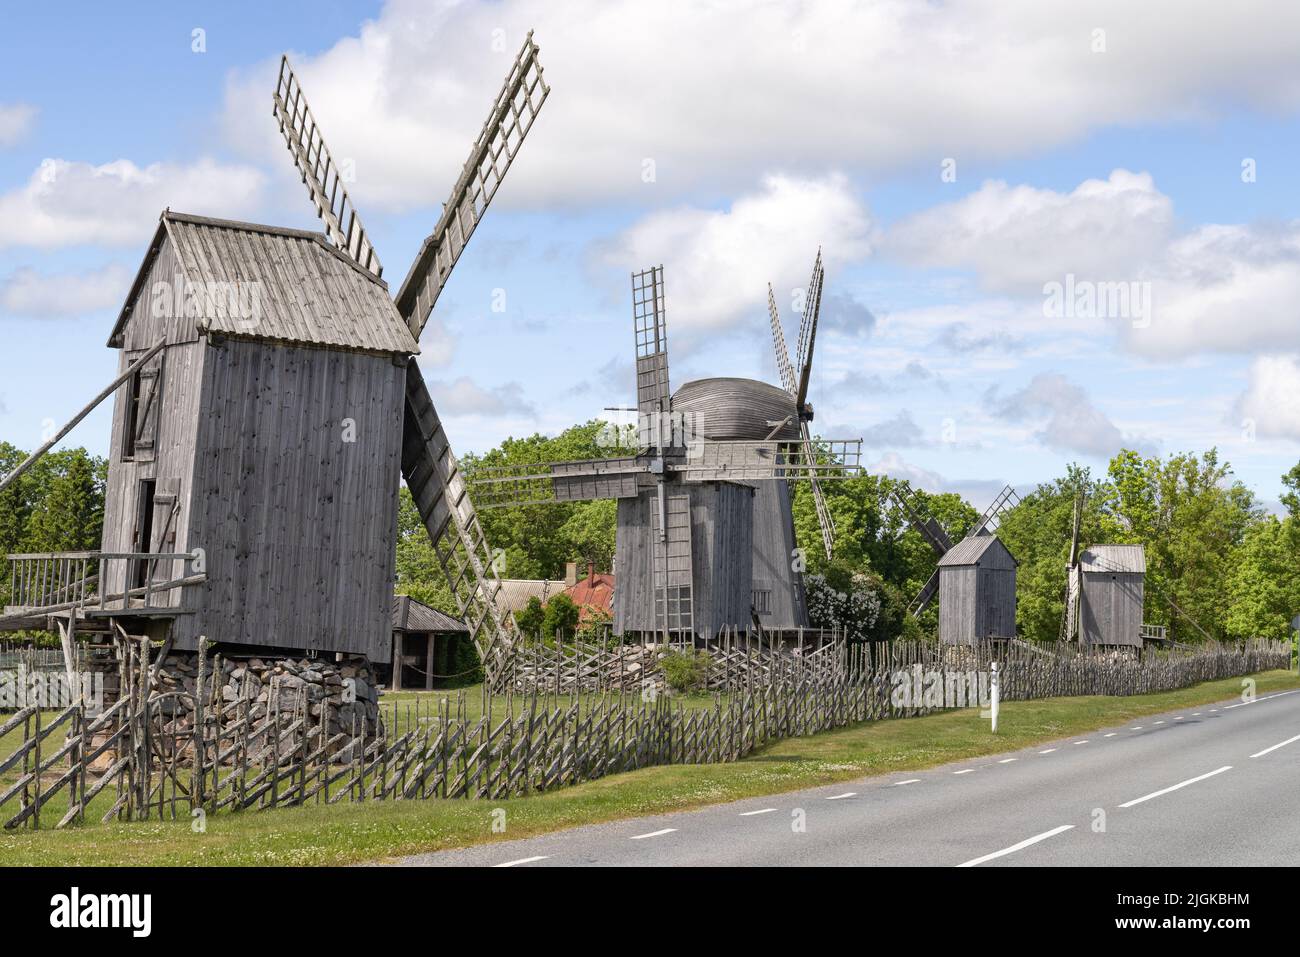 Les moulins à vent d'Angla, cinq moulins à vent en bois dans le parc à vent d'Angla, construit au début du 20th siècle, île Saarema, Saarema, Estonie Europe. Banque D'Images